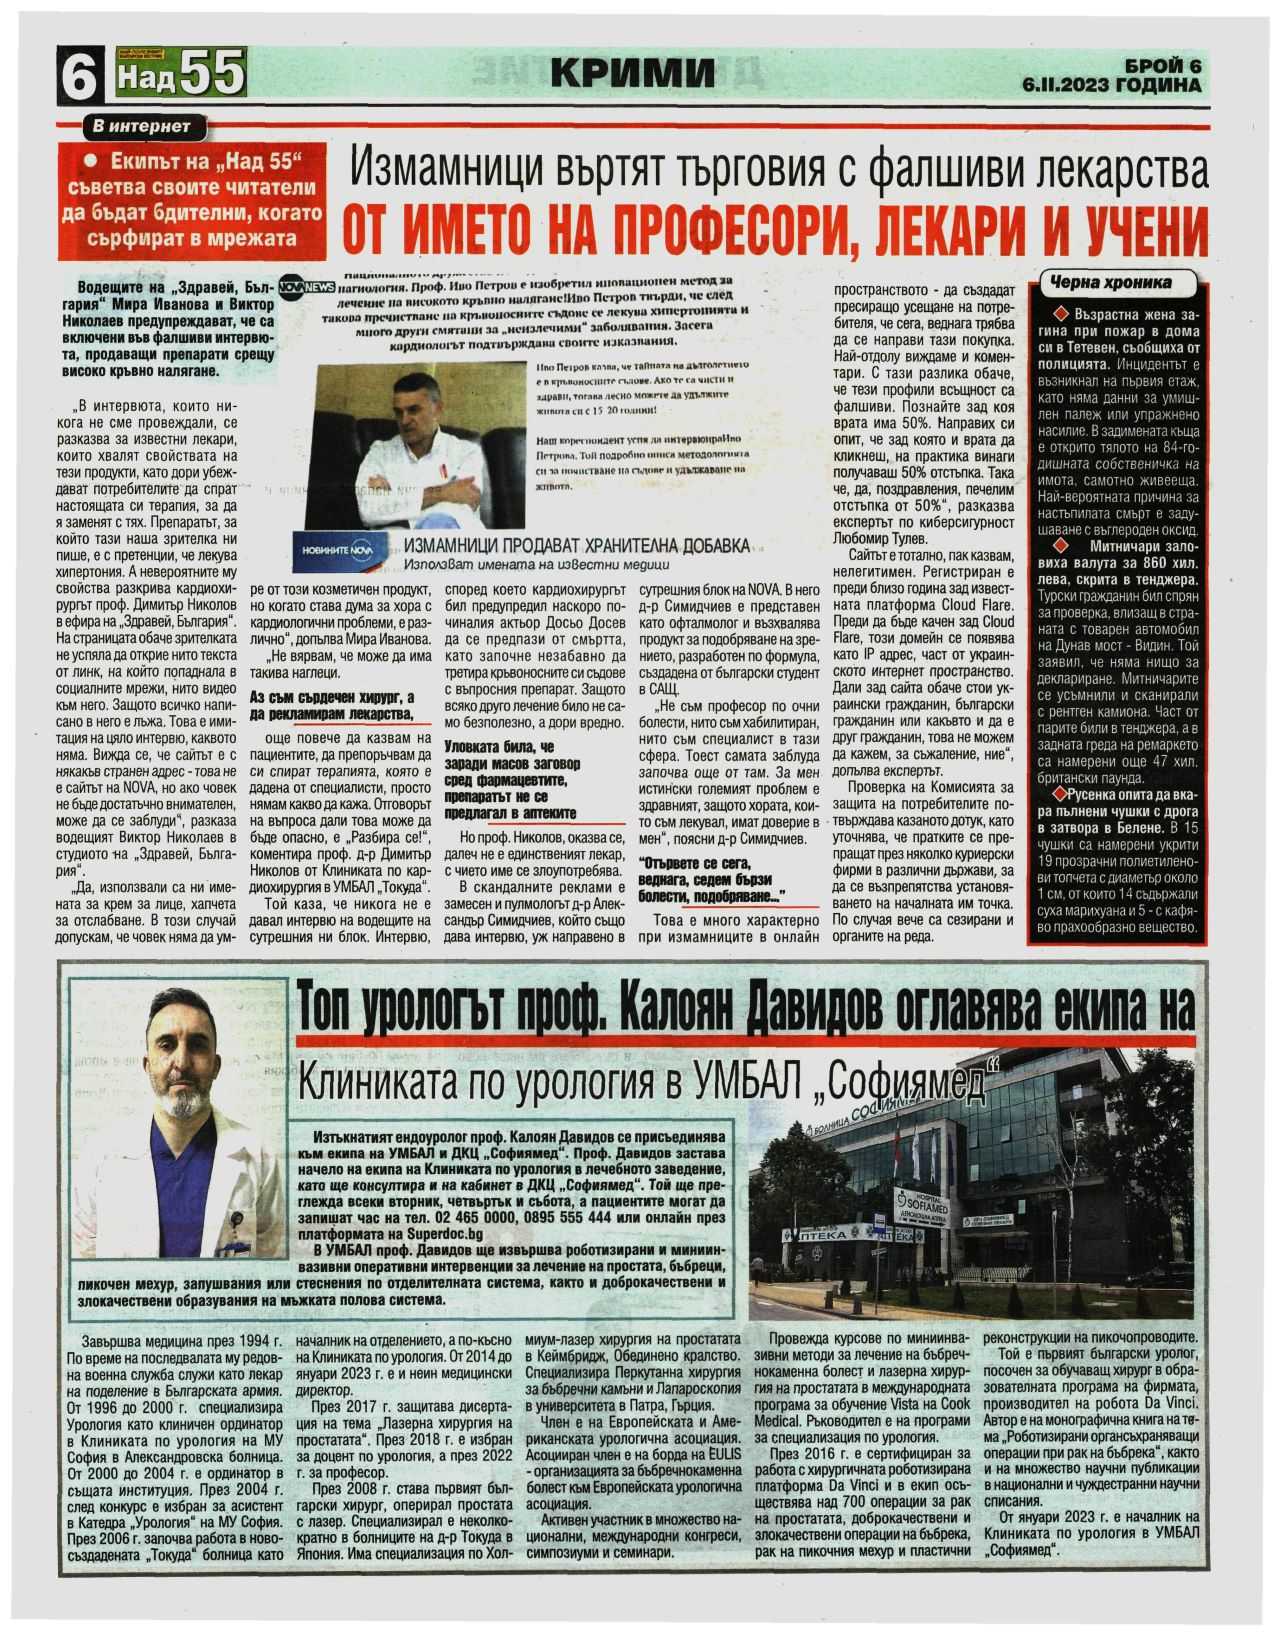 Топ урологът проф. Калоян Давилов оглавява екипа на Клиниката по урология в УМБАЛ 